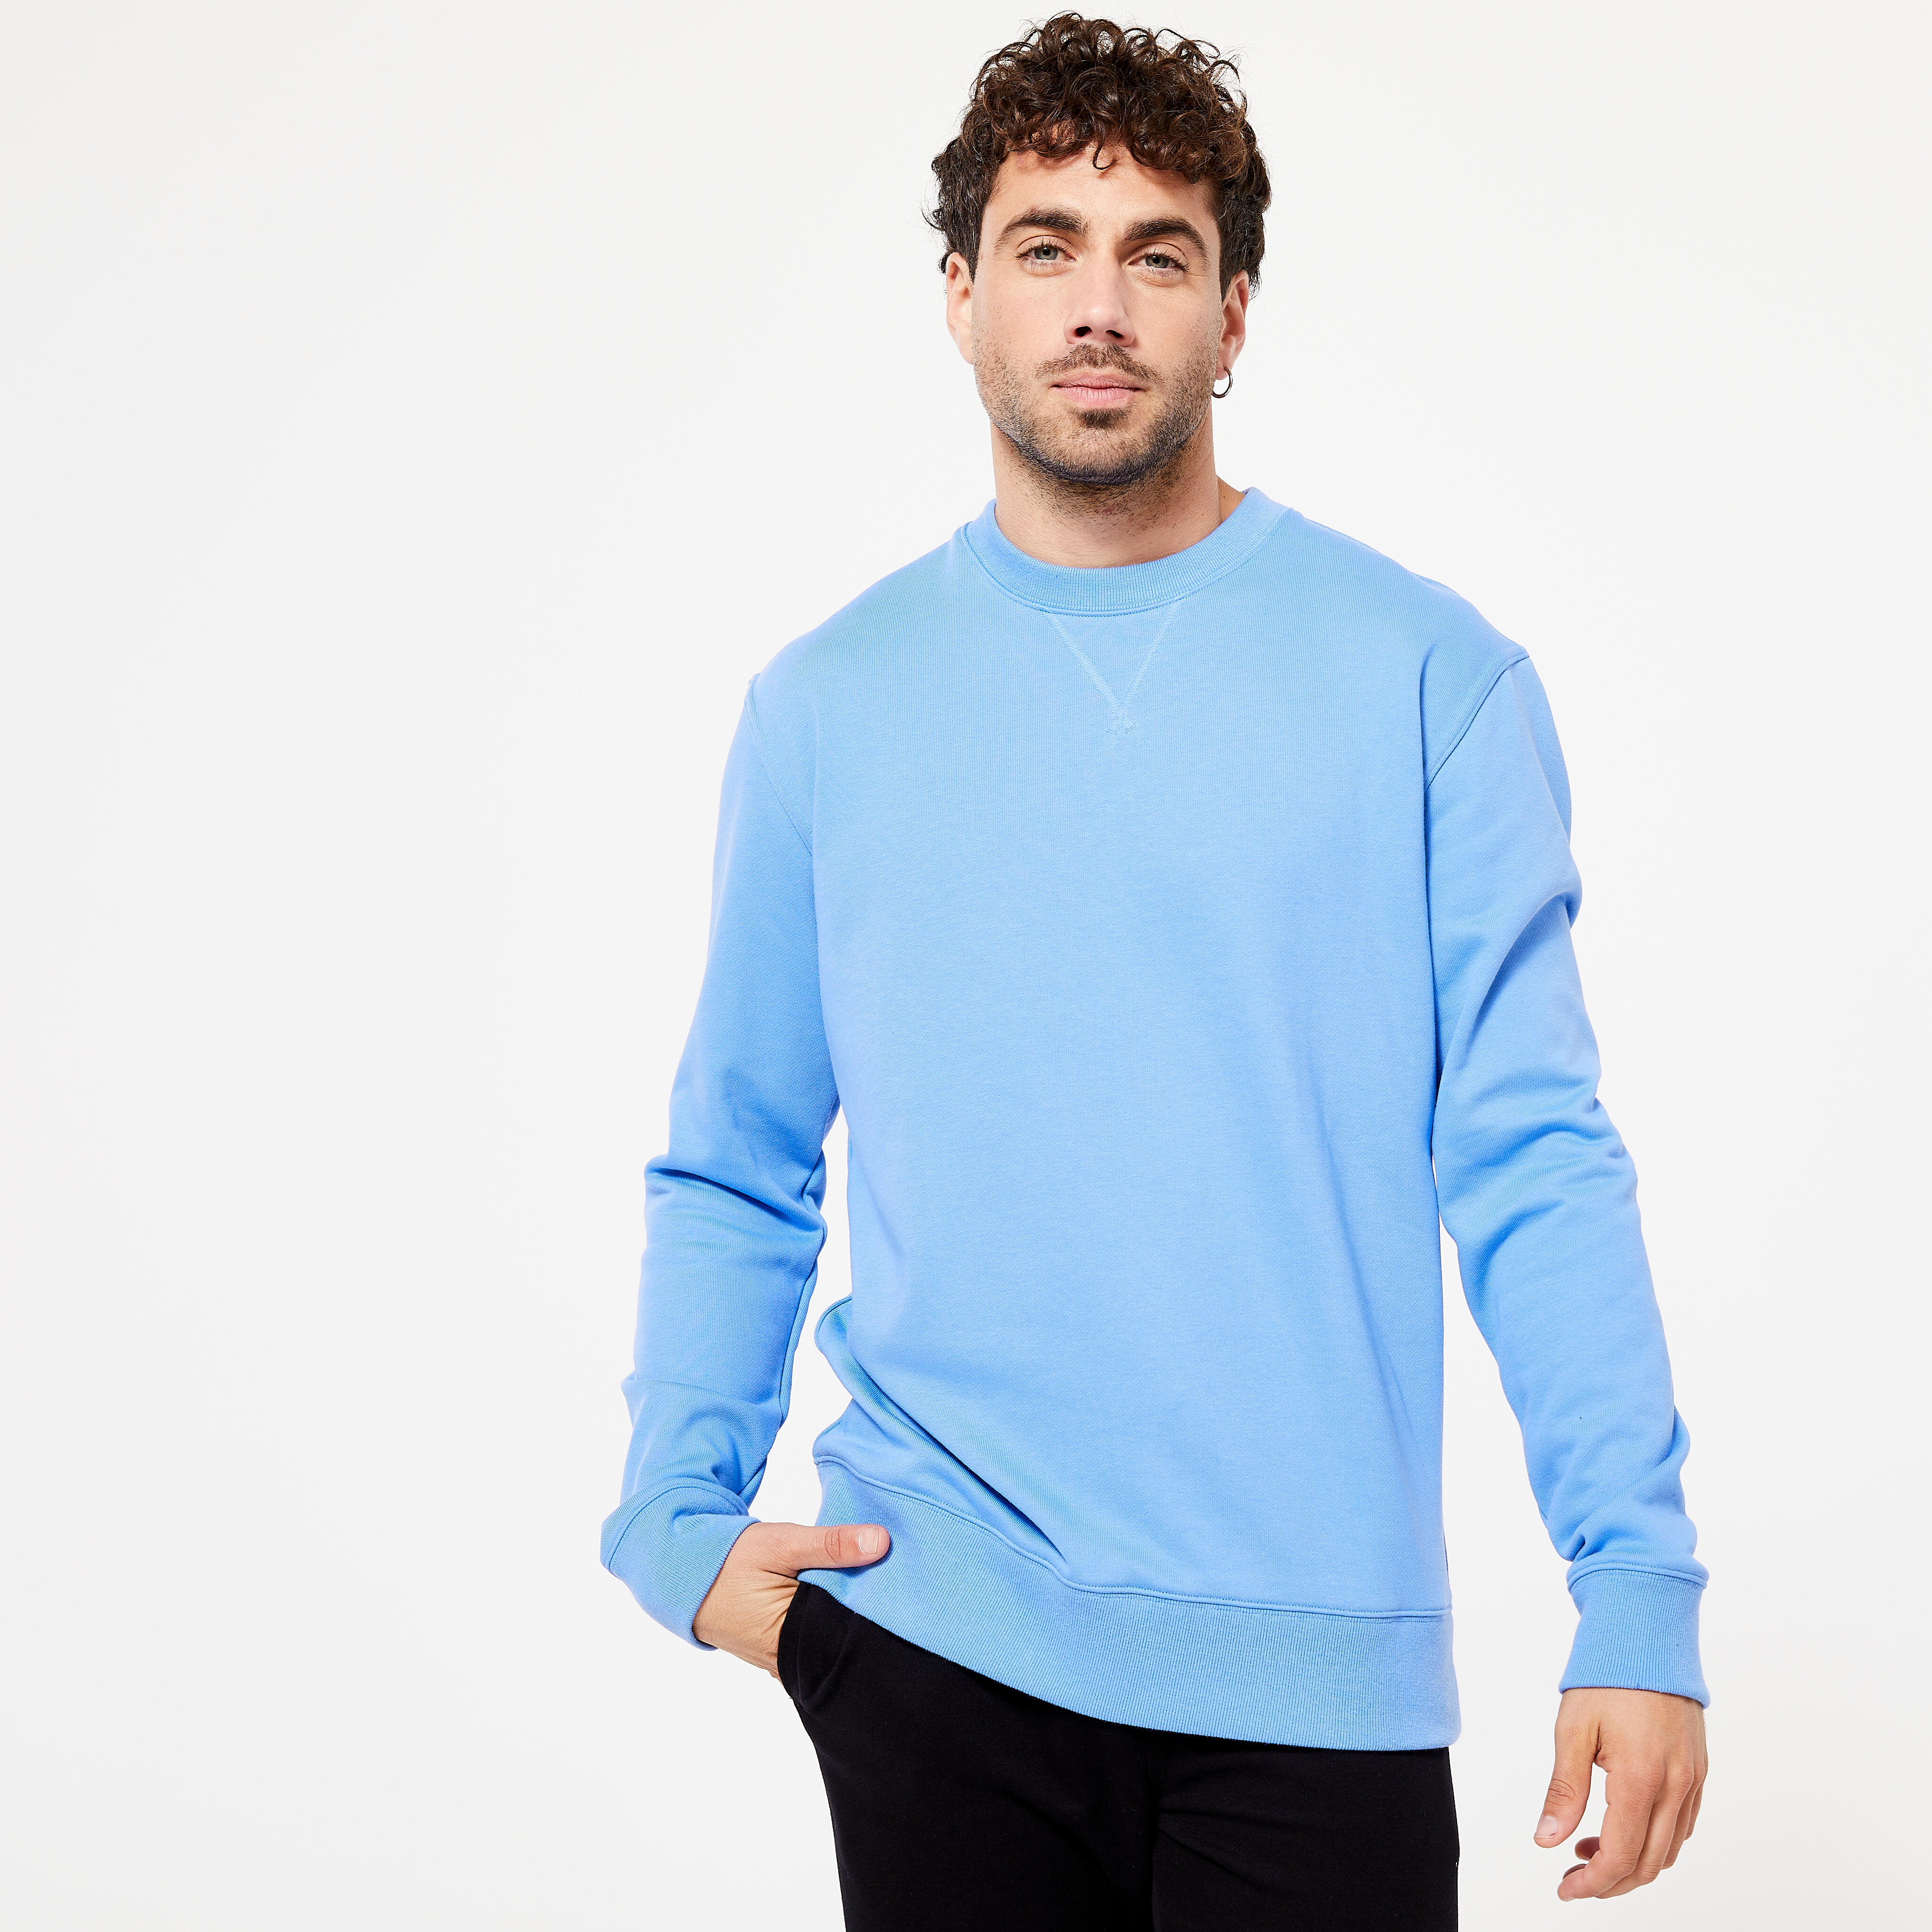 Image of Men’s Sweater - Essentials 500